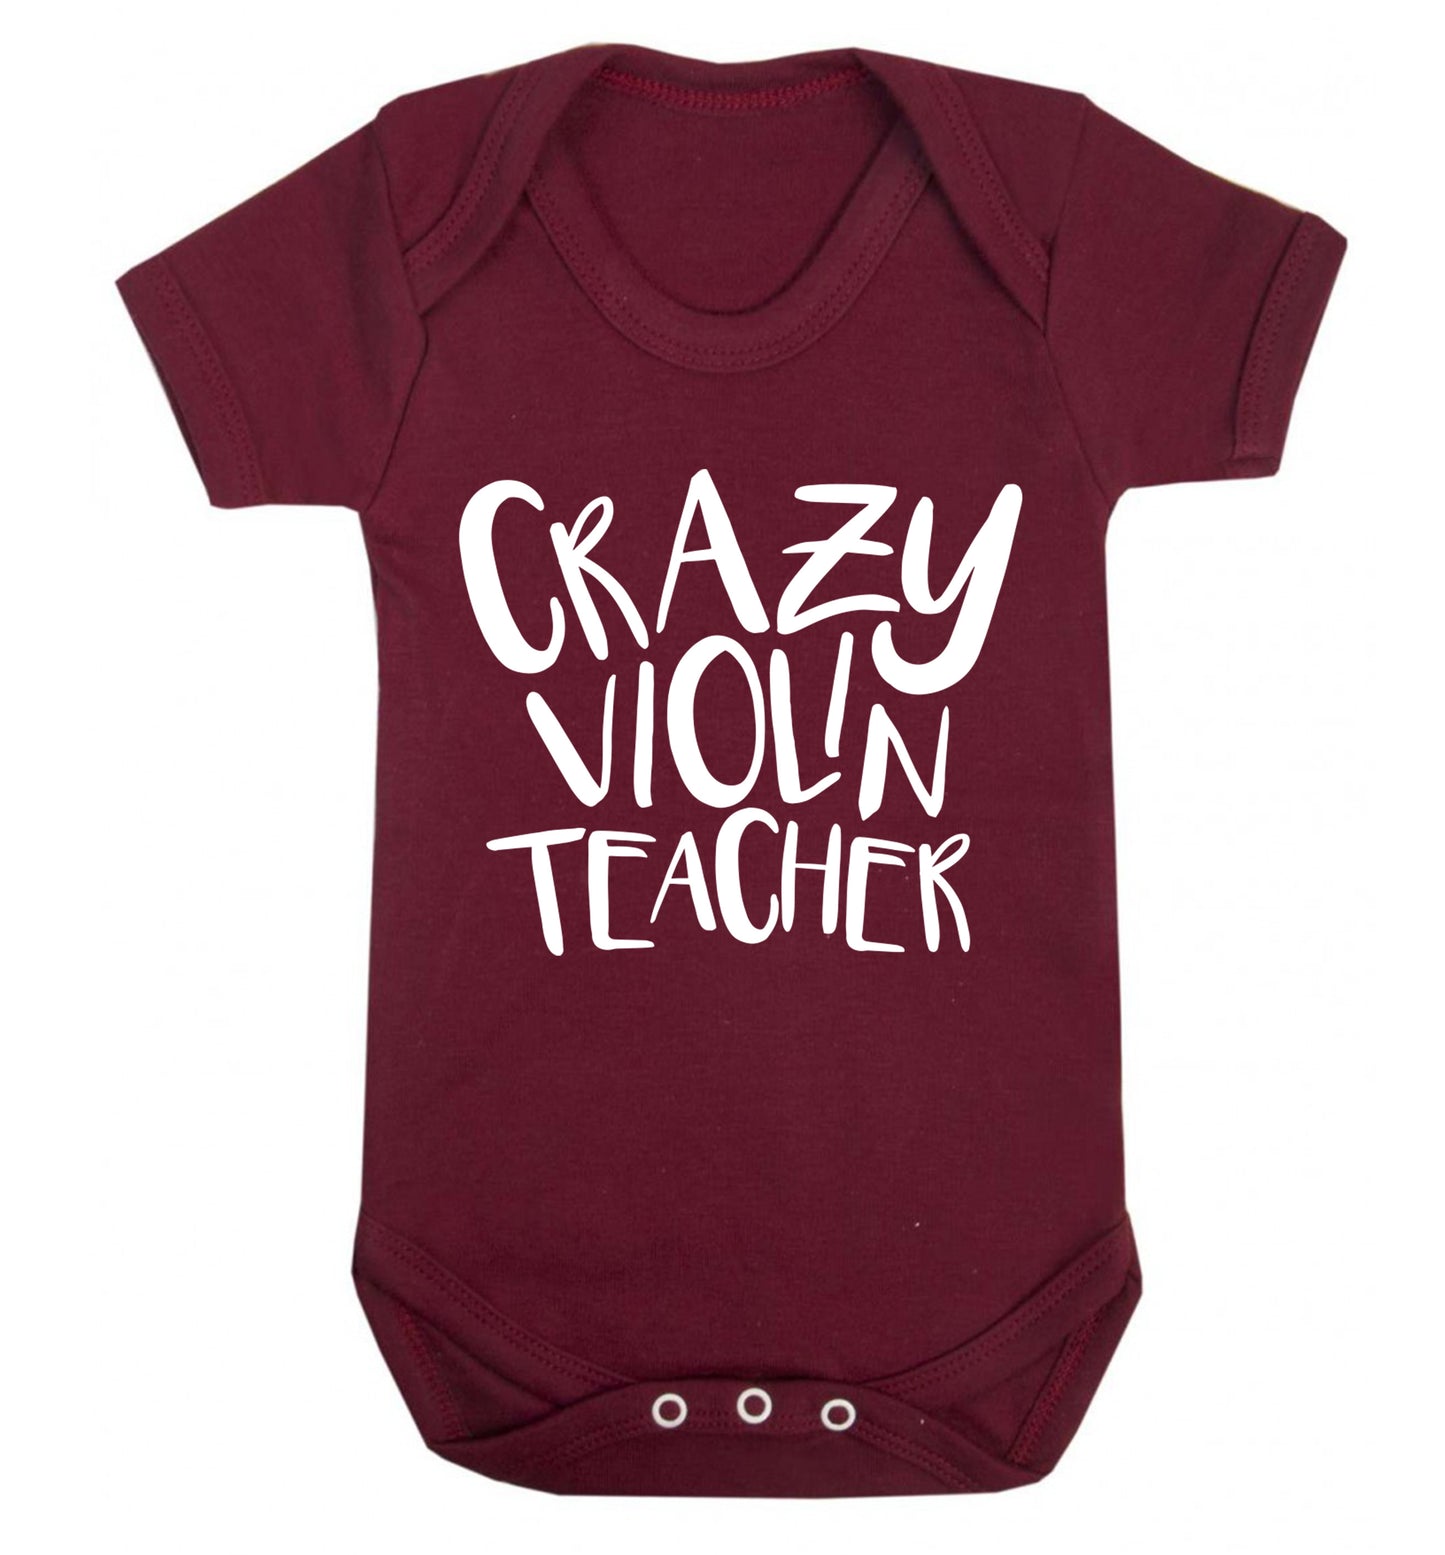 Crazy violin teacher Baby Vest maroon 18-24 months